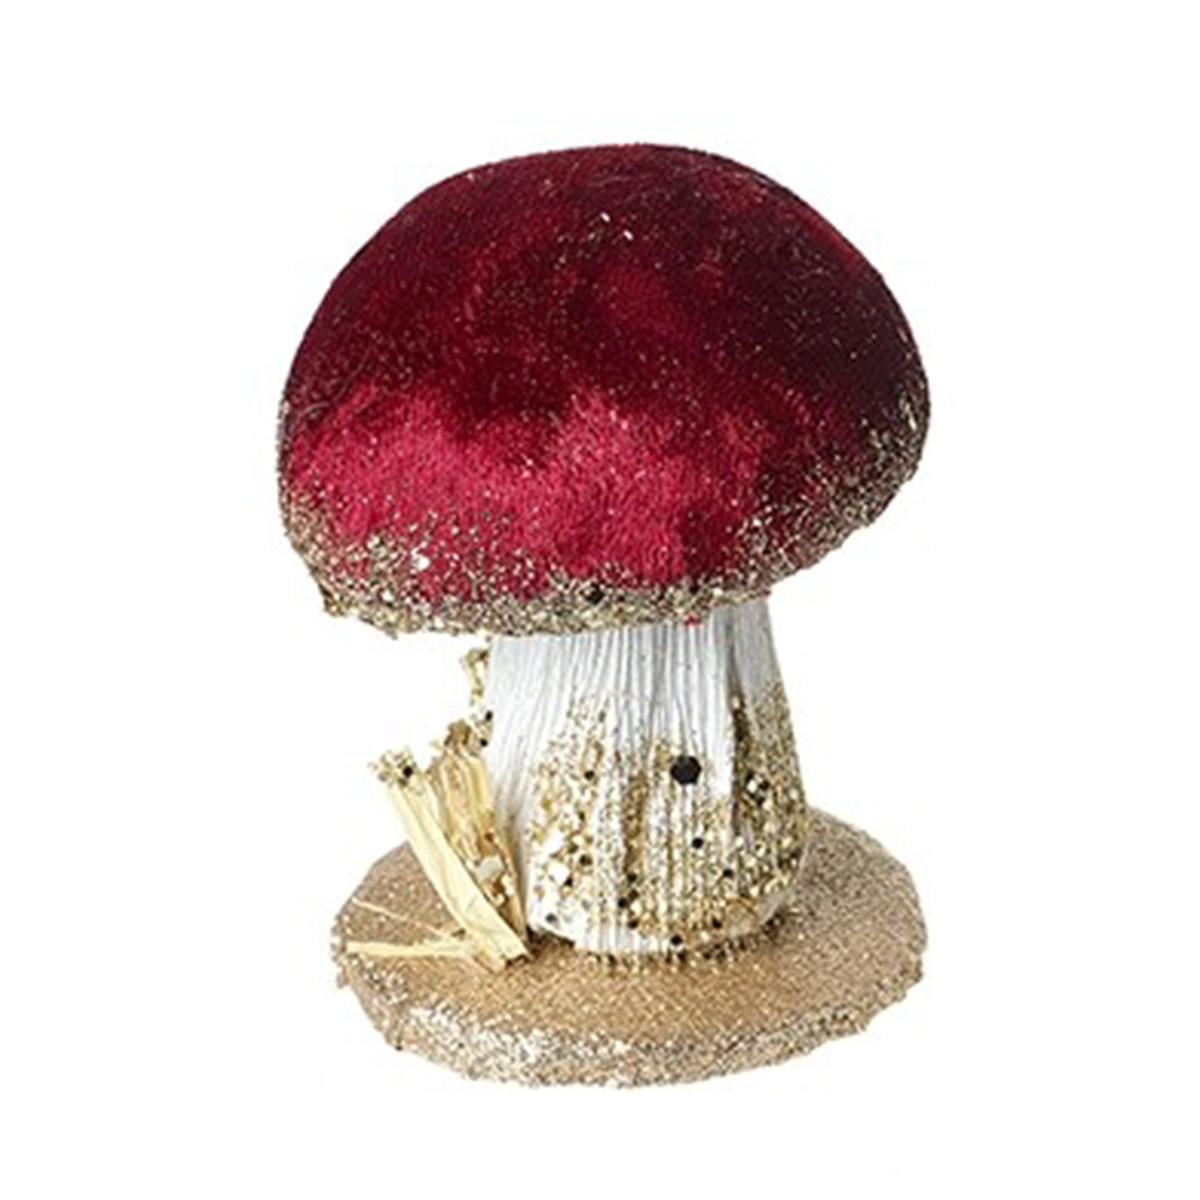 Velvet Mushroom Christmas Ornaments